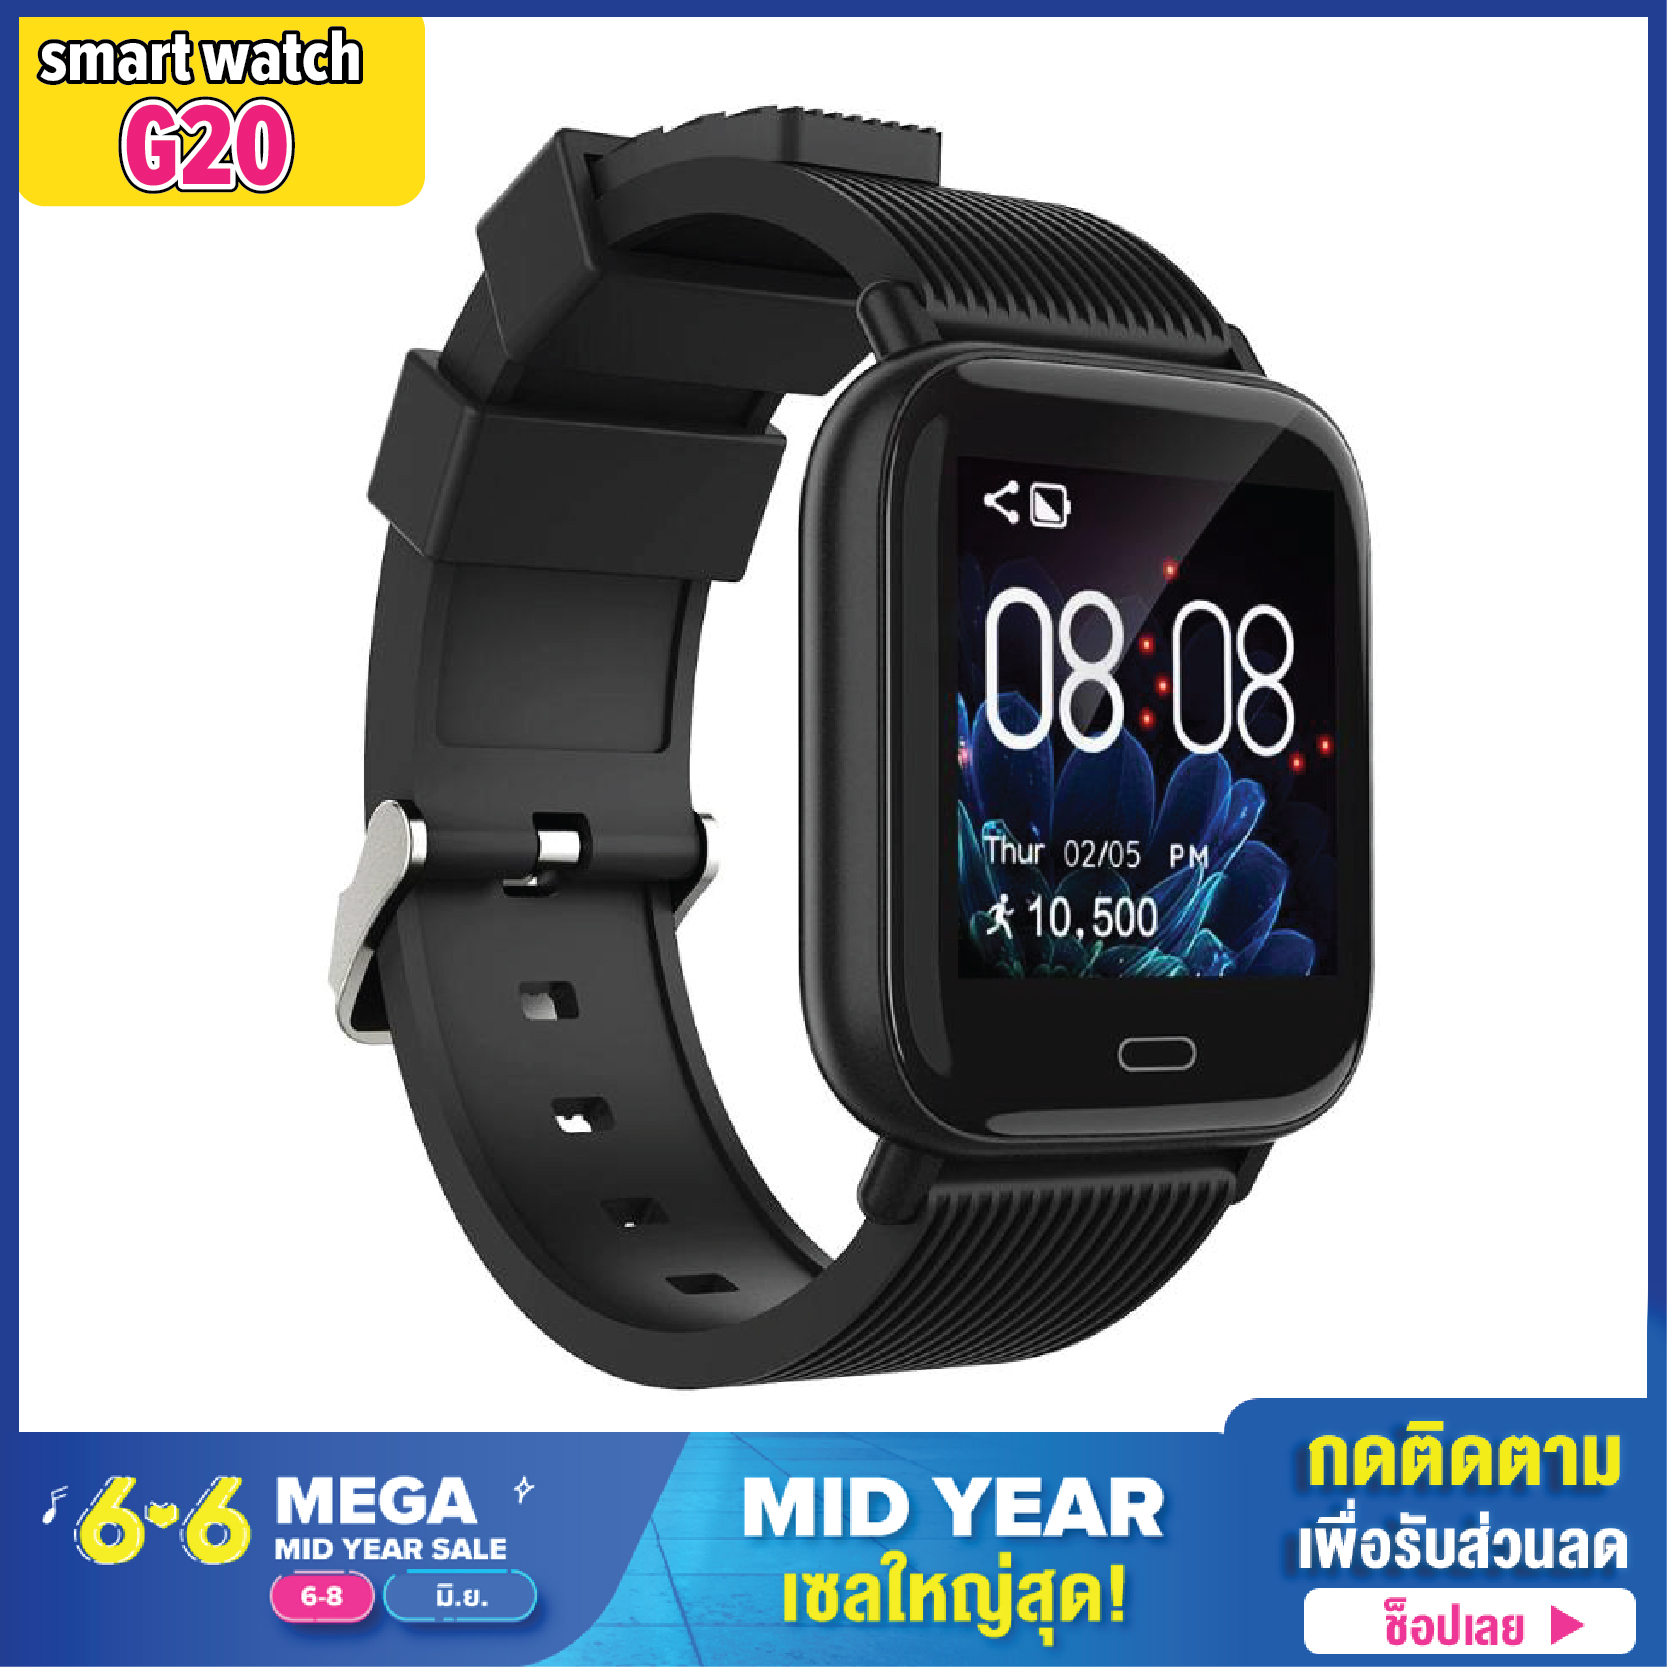 Ok Shopings - Smartwatch G20 นาฬิกา สมาร์ทวอทช์  นาฬิกาอัจฉริยะ  สายรัดข้อมือเพื่อสุขภาพ ดิจิตอล มากกว่า 10 ฟังก์ชั่น